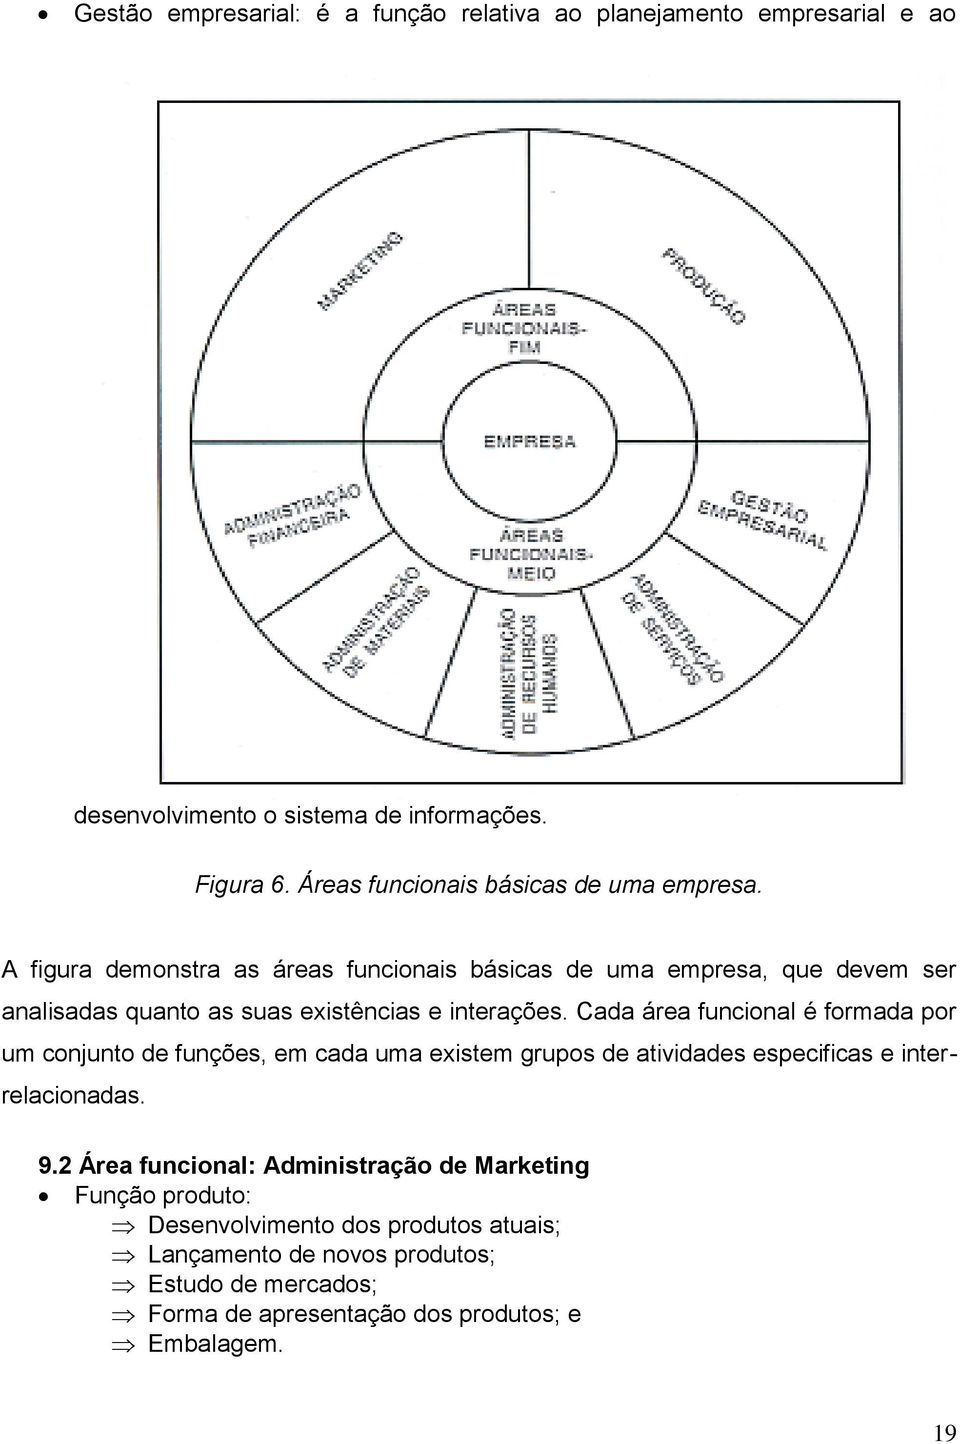 A figura demonstra as áreas funcionais básicas de uma empresa, que devem ser analisadas quanto as suas existências e interações.